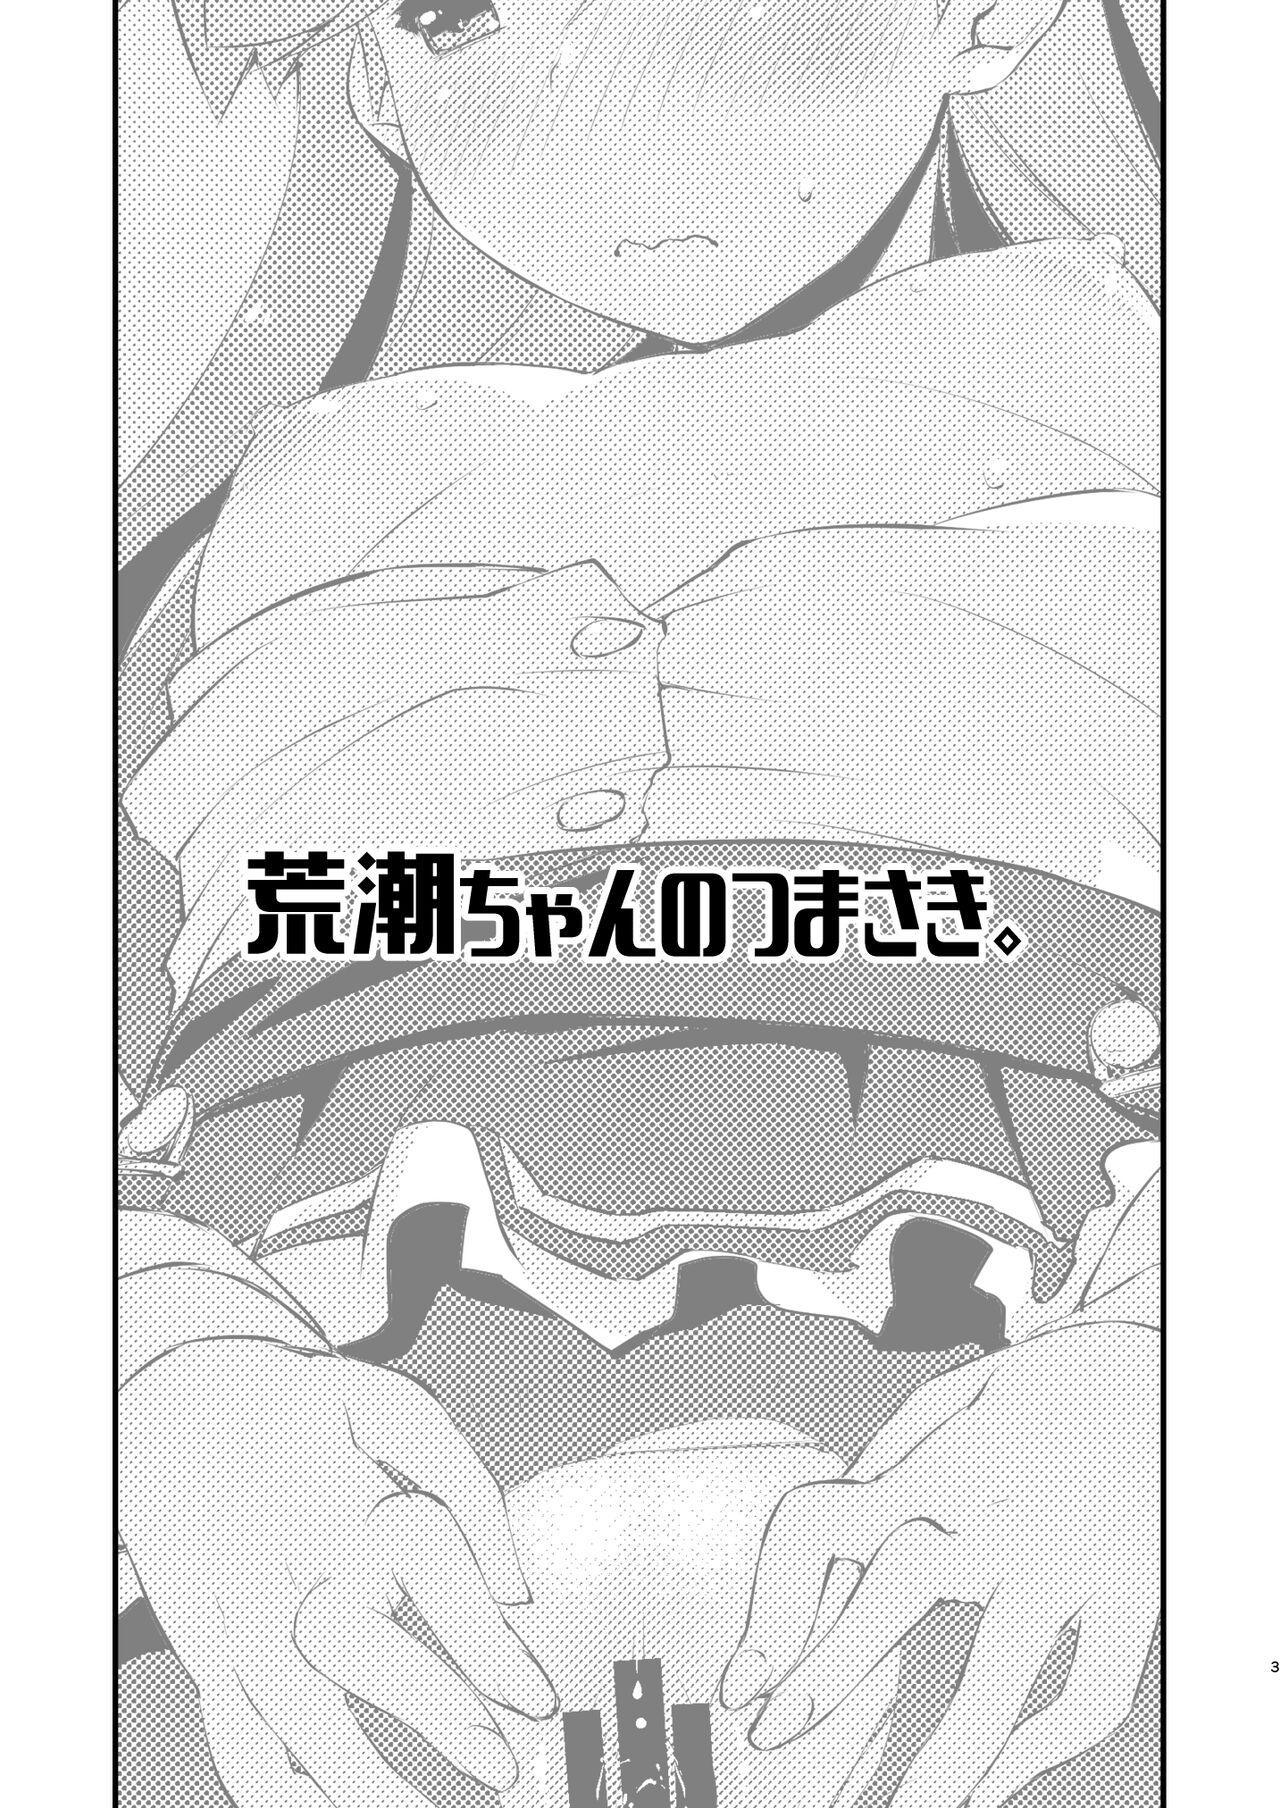 Beard Arashio-chan no Tsumasaki. - Kantai collection Femdom Porn - Page 3